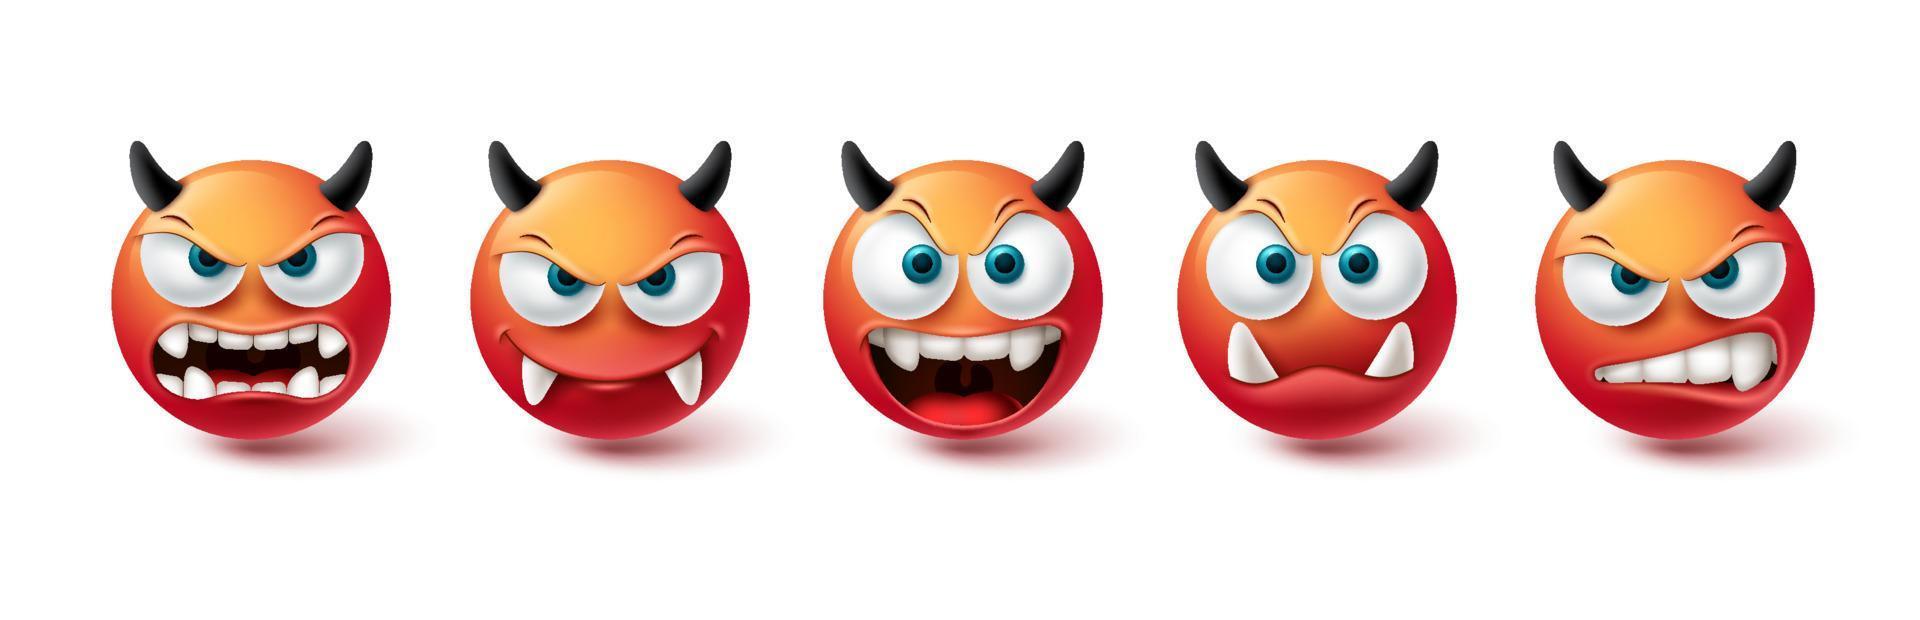 ensemble de vecteurs de visage maléfique emoji. émoticône mauvaise, monstre, démon et collection d'icônes rouges effrayantes isolées sur fond blanc pour la conception d'éléments graphiques. illustration vectorielle vecteur